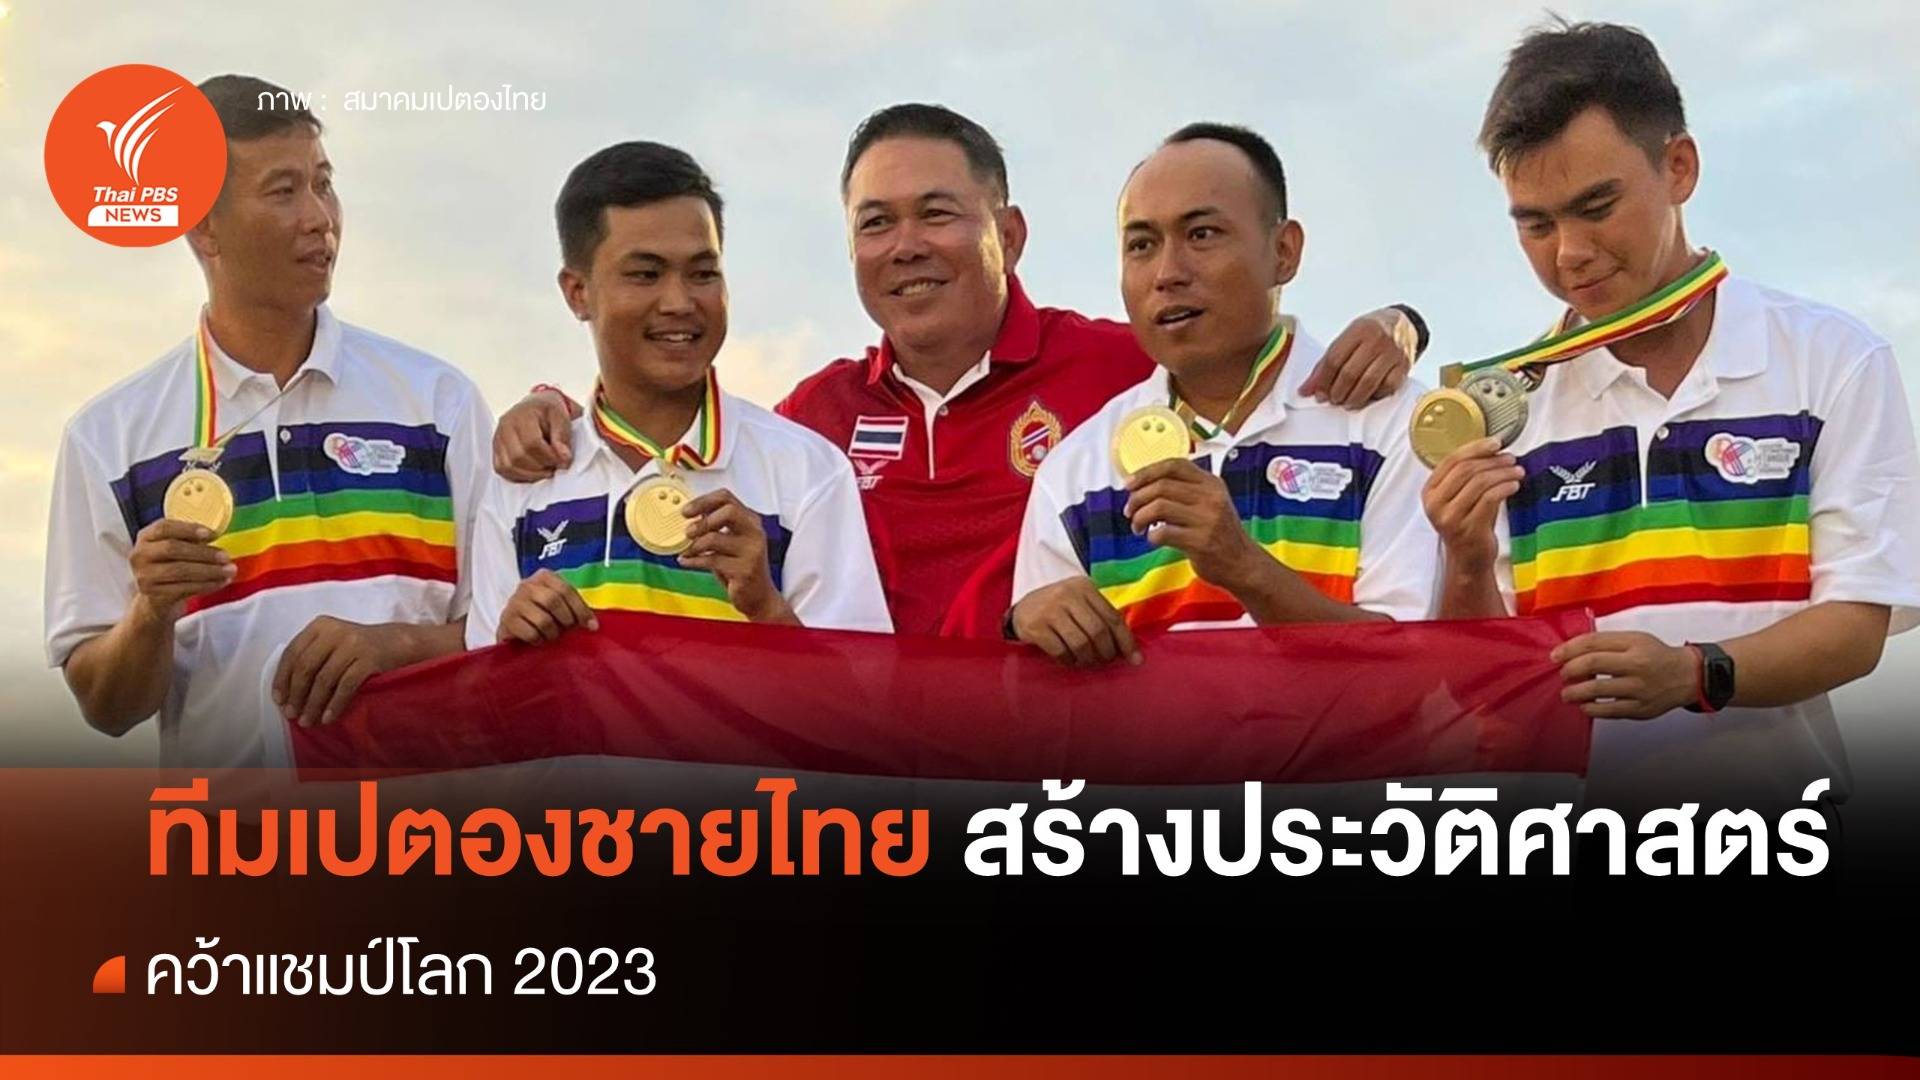 ทีมเปตองชายไทยสร้างประวัติศาสตร์คว้าแชมป์โลก 2023